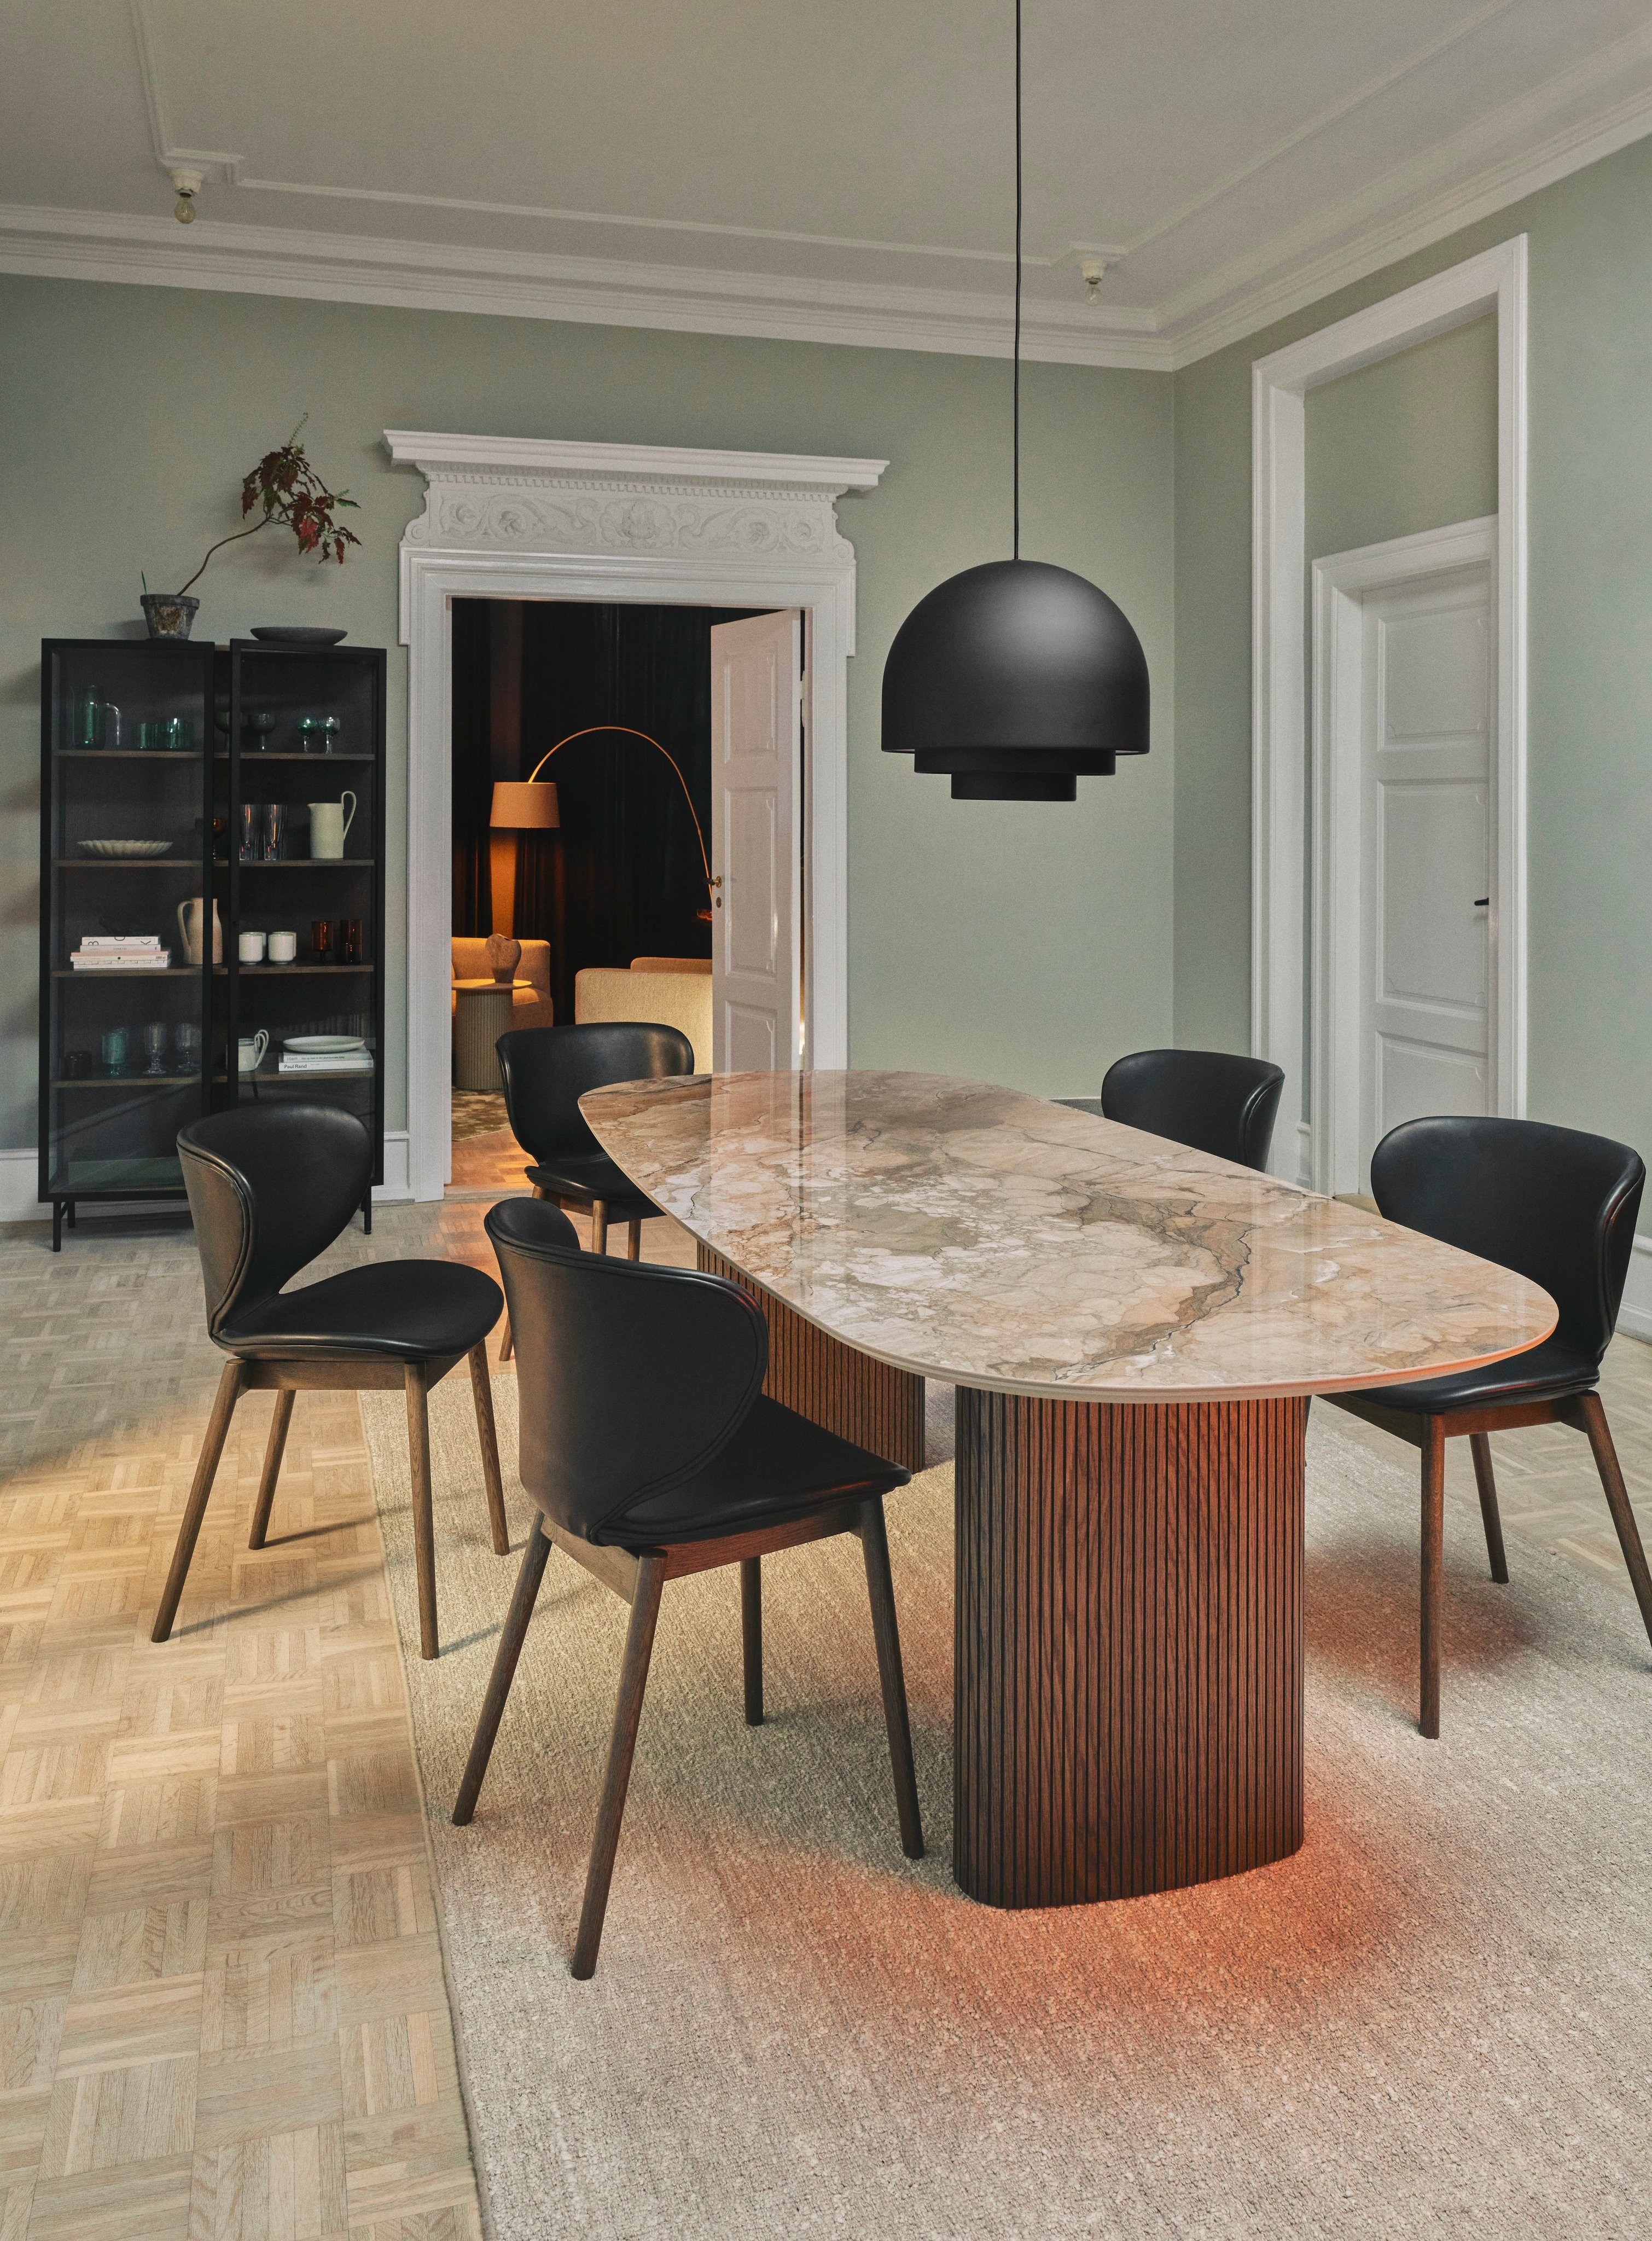 採用 Santiago 餐桌和 Hamilton 餐椅的現代用餐室。